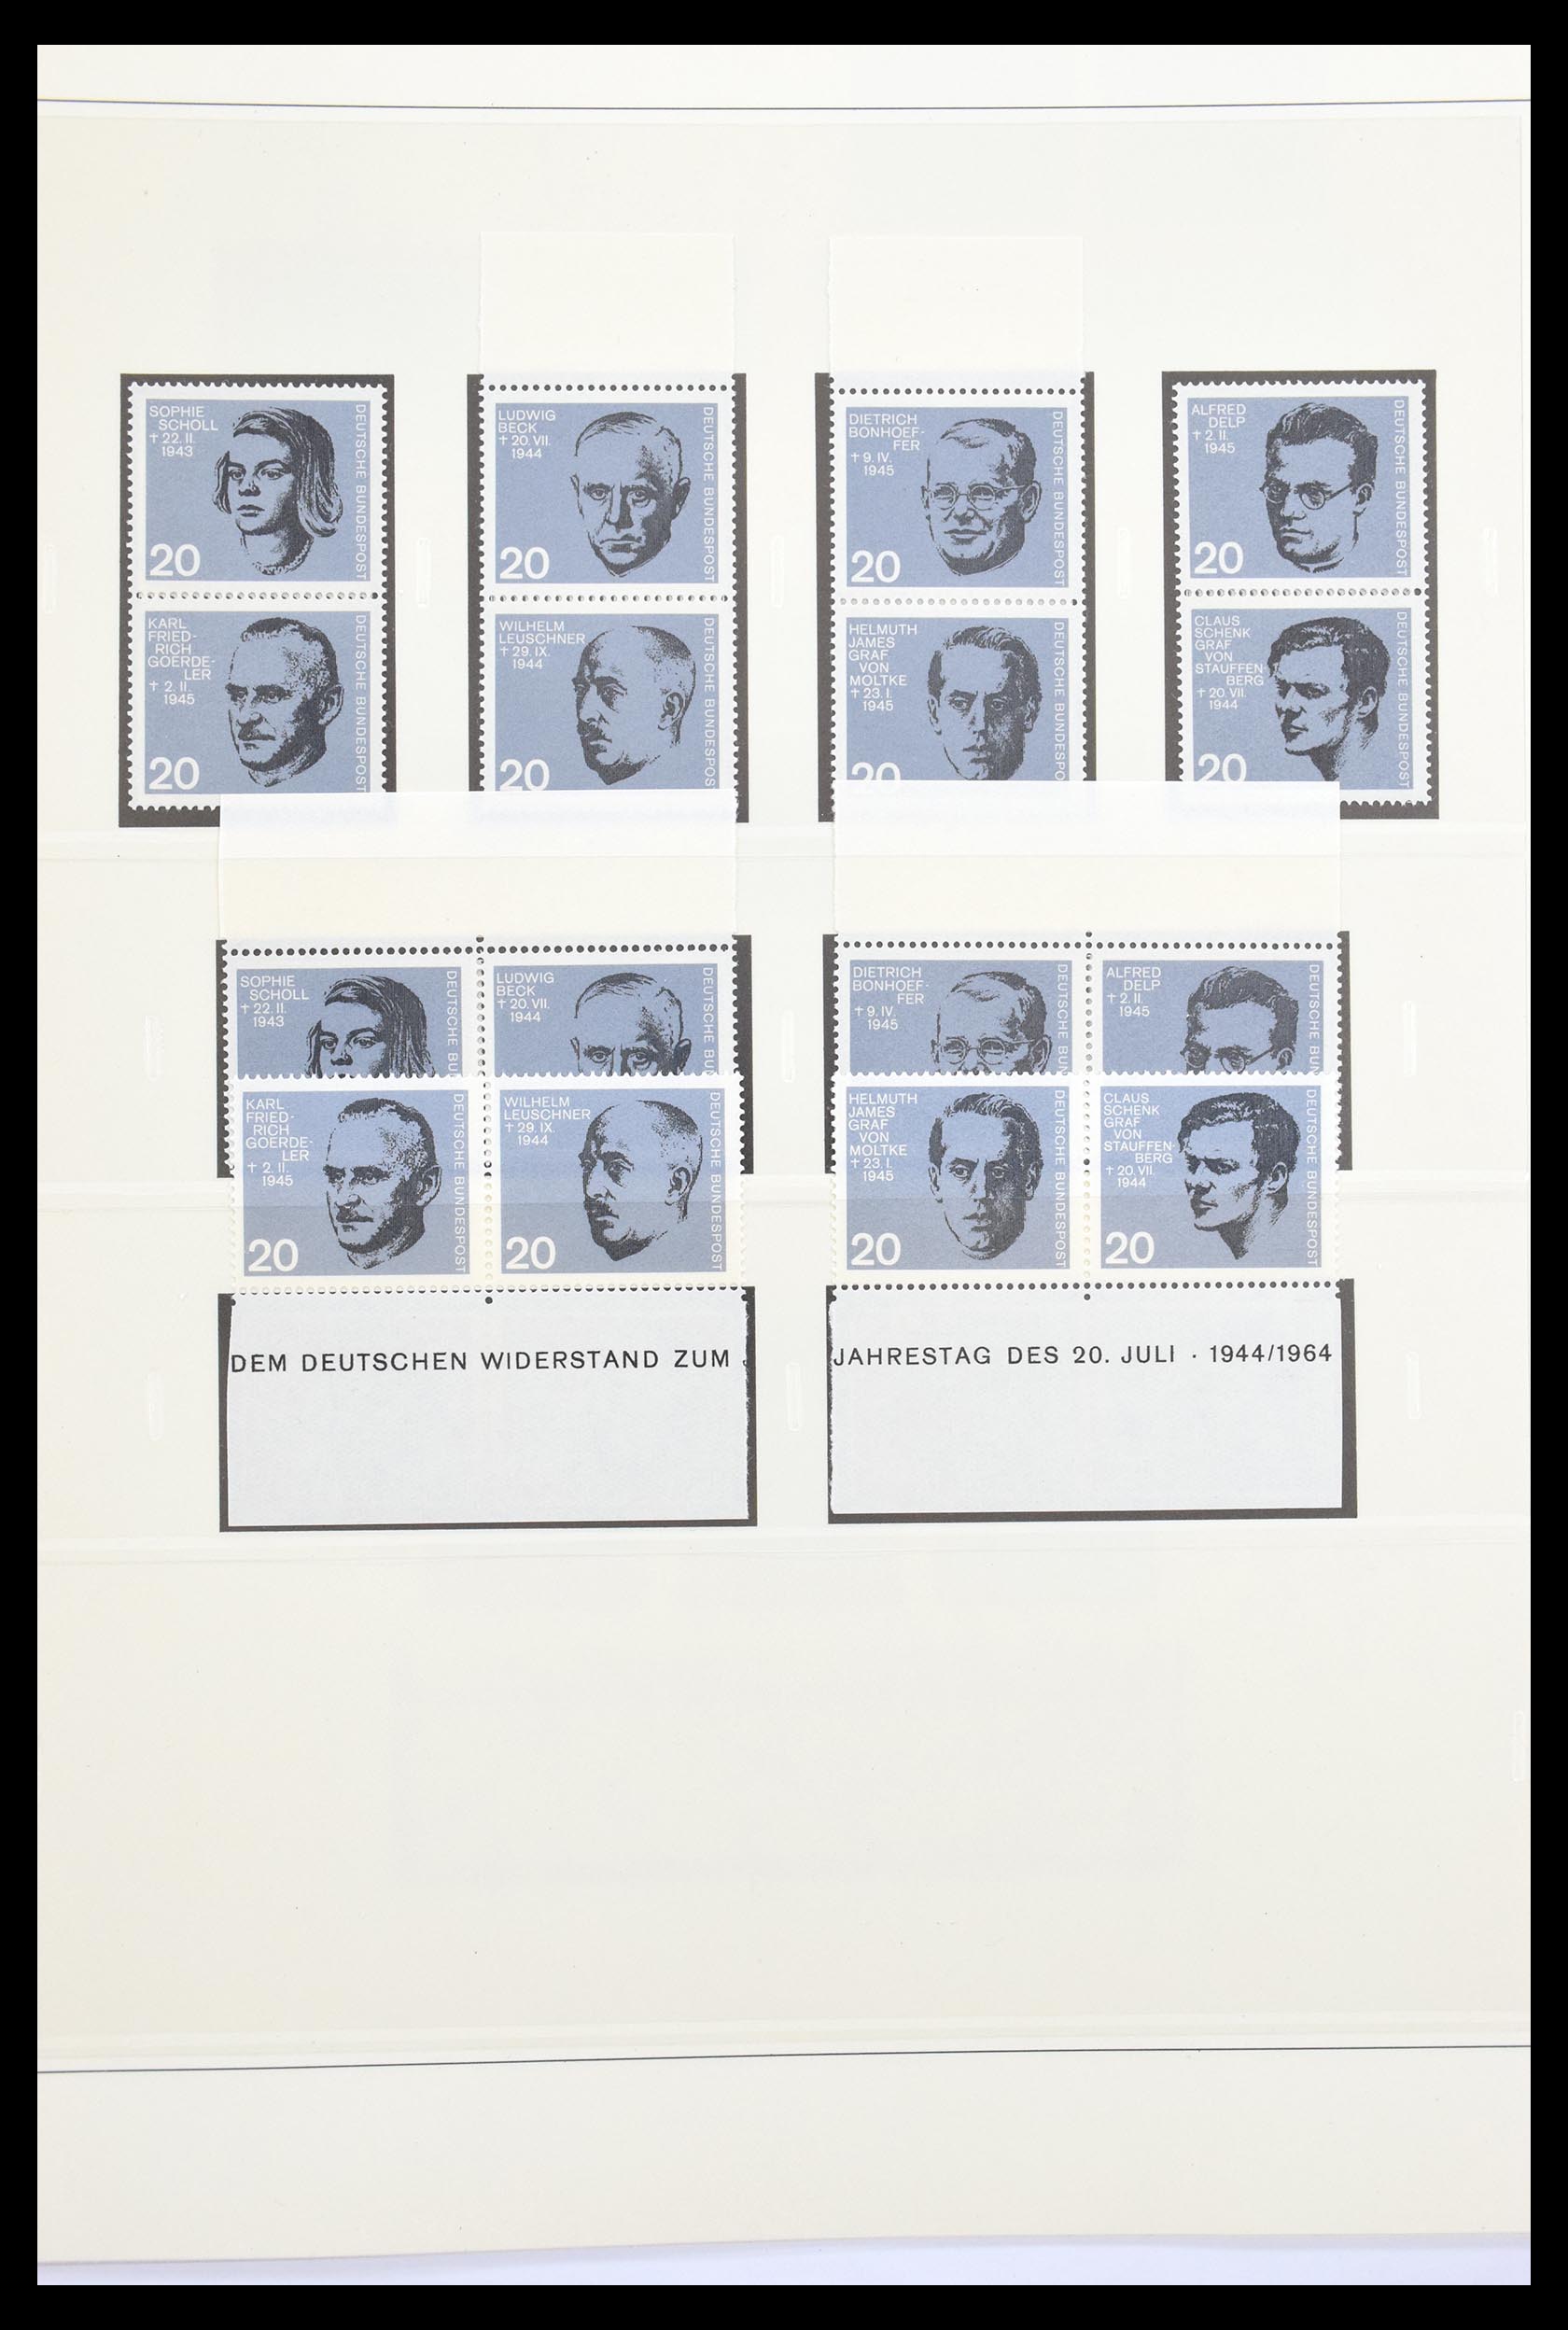 30605 020 - 30605 Bundespost combinaties 1951-1974.